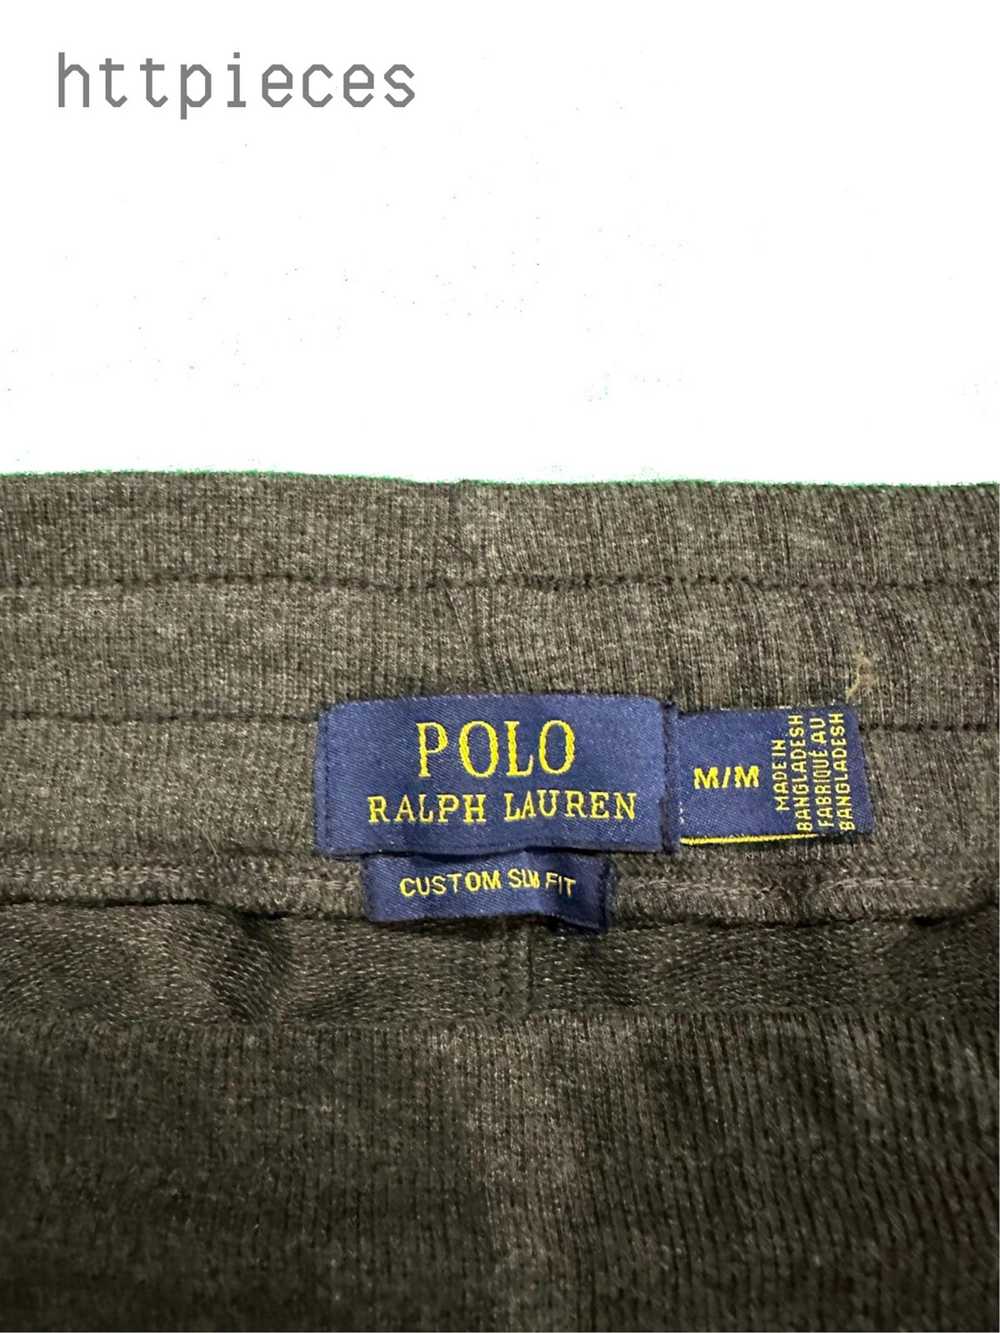 Polo Ralph Lauren Ralph Lauren Sweat Suit - image 7